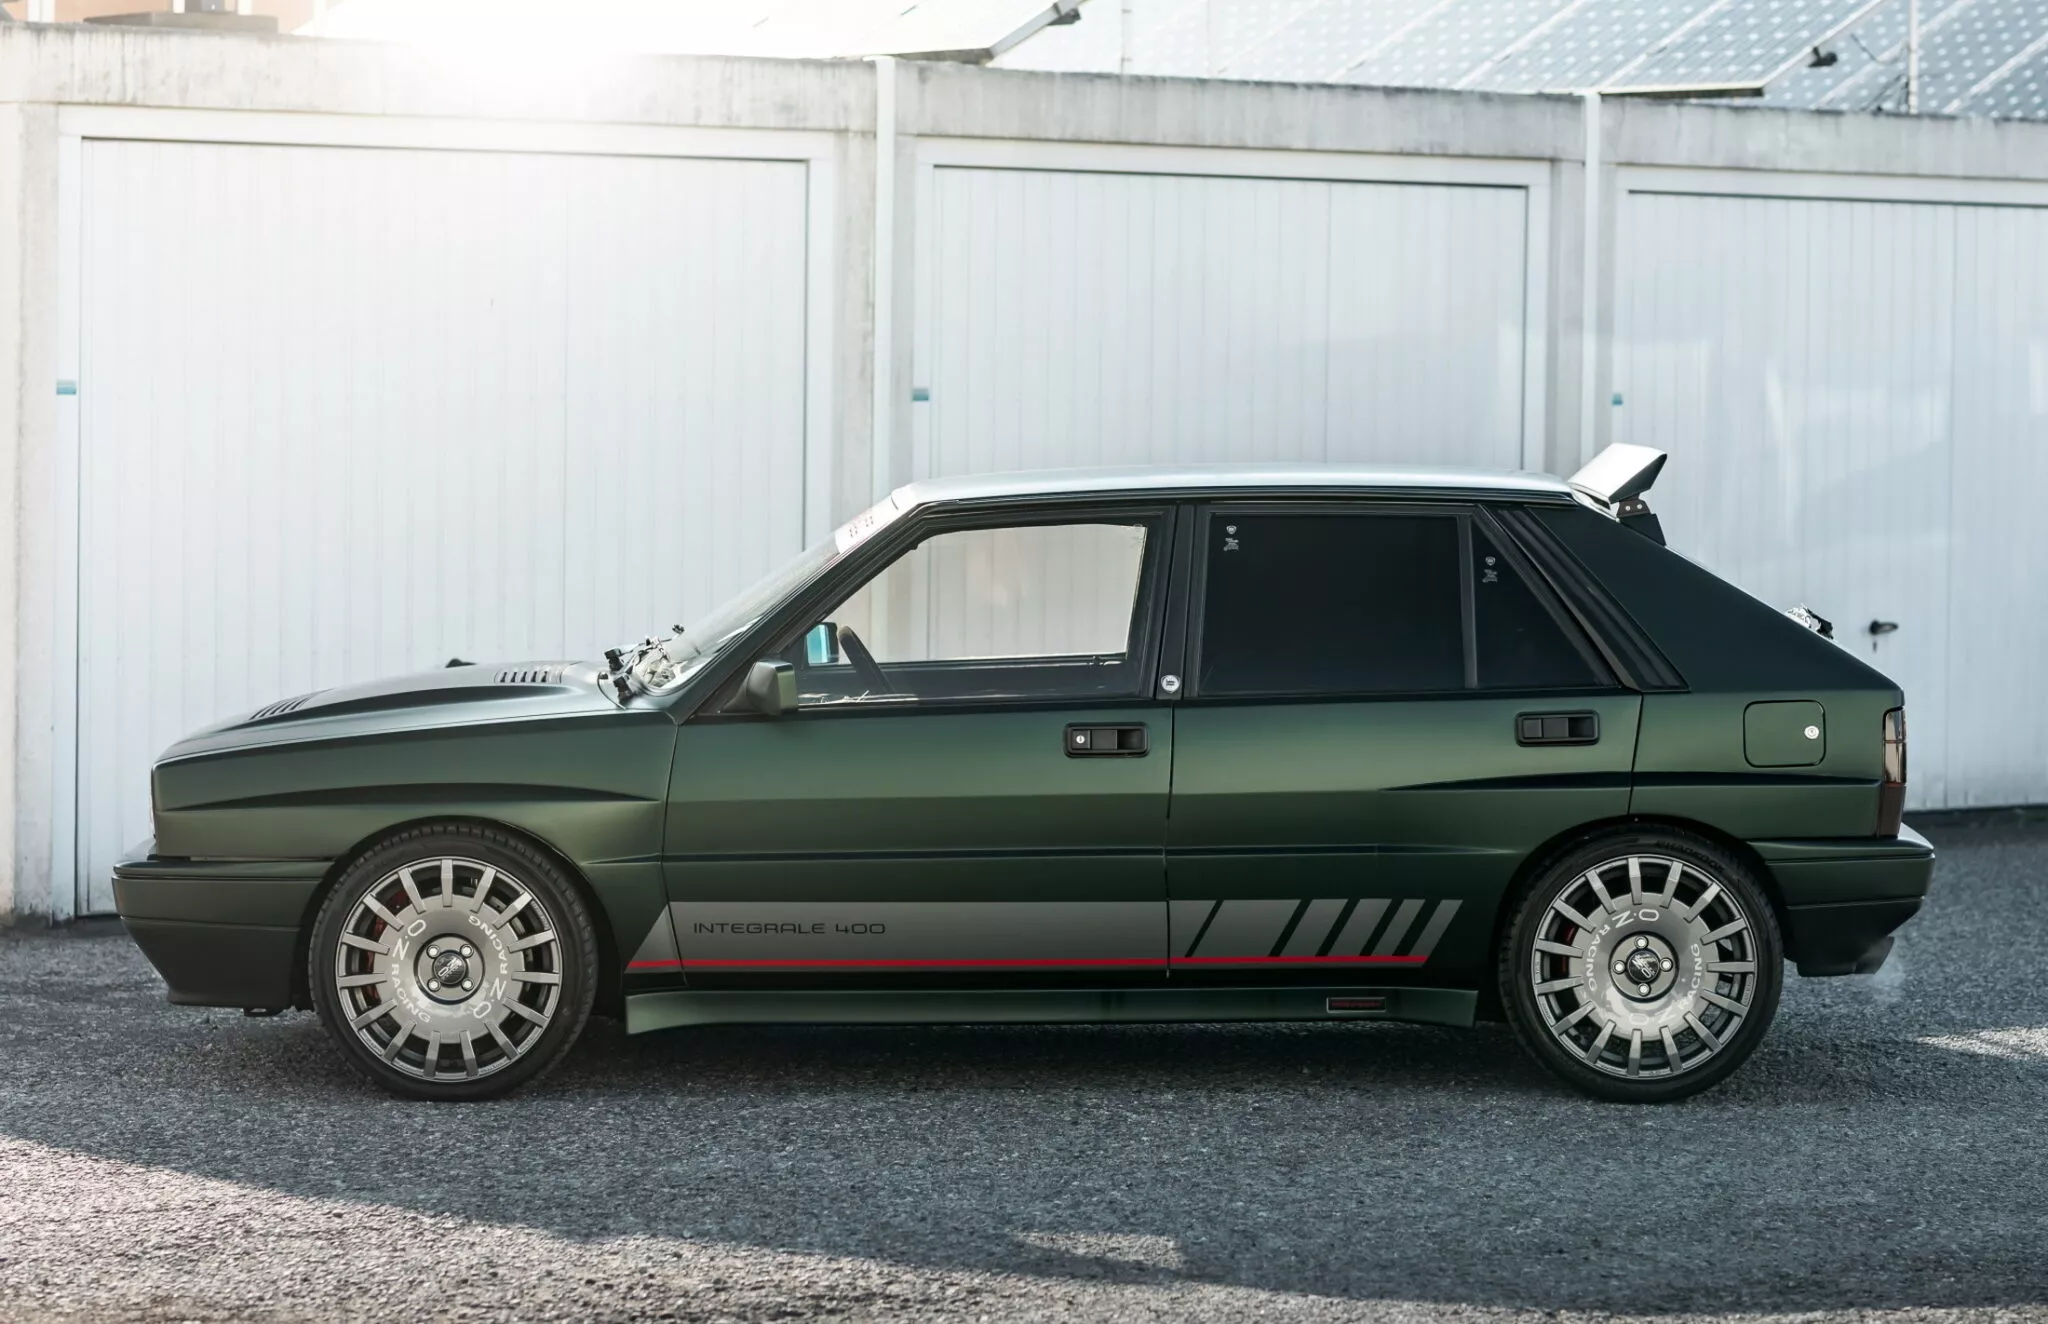 شركة مانهارت تكشف عن سيارة لانسيا كلاسيكية إيطالية تم تجديدها بالكامل وعرضها للبيع 7